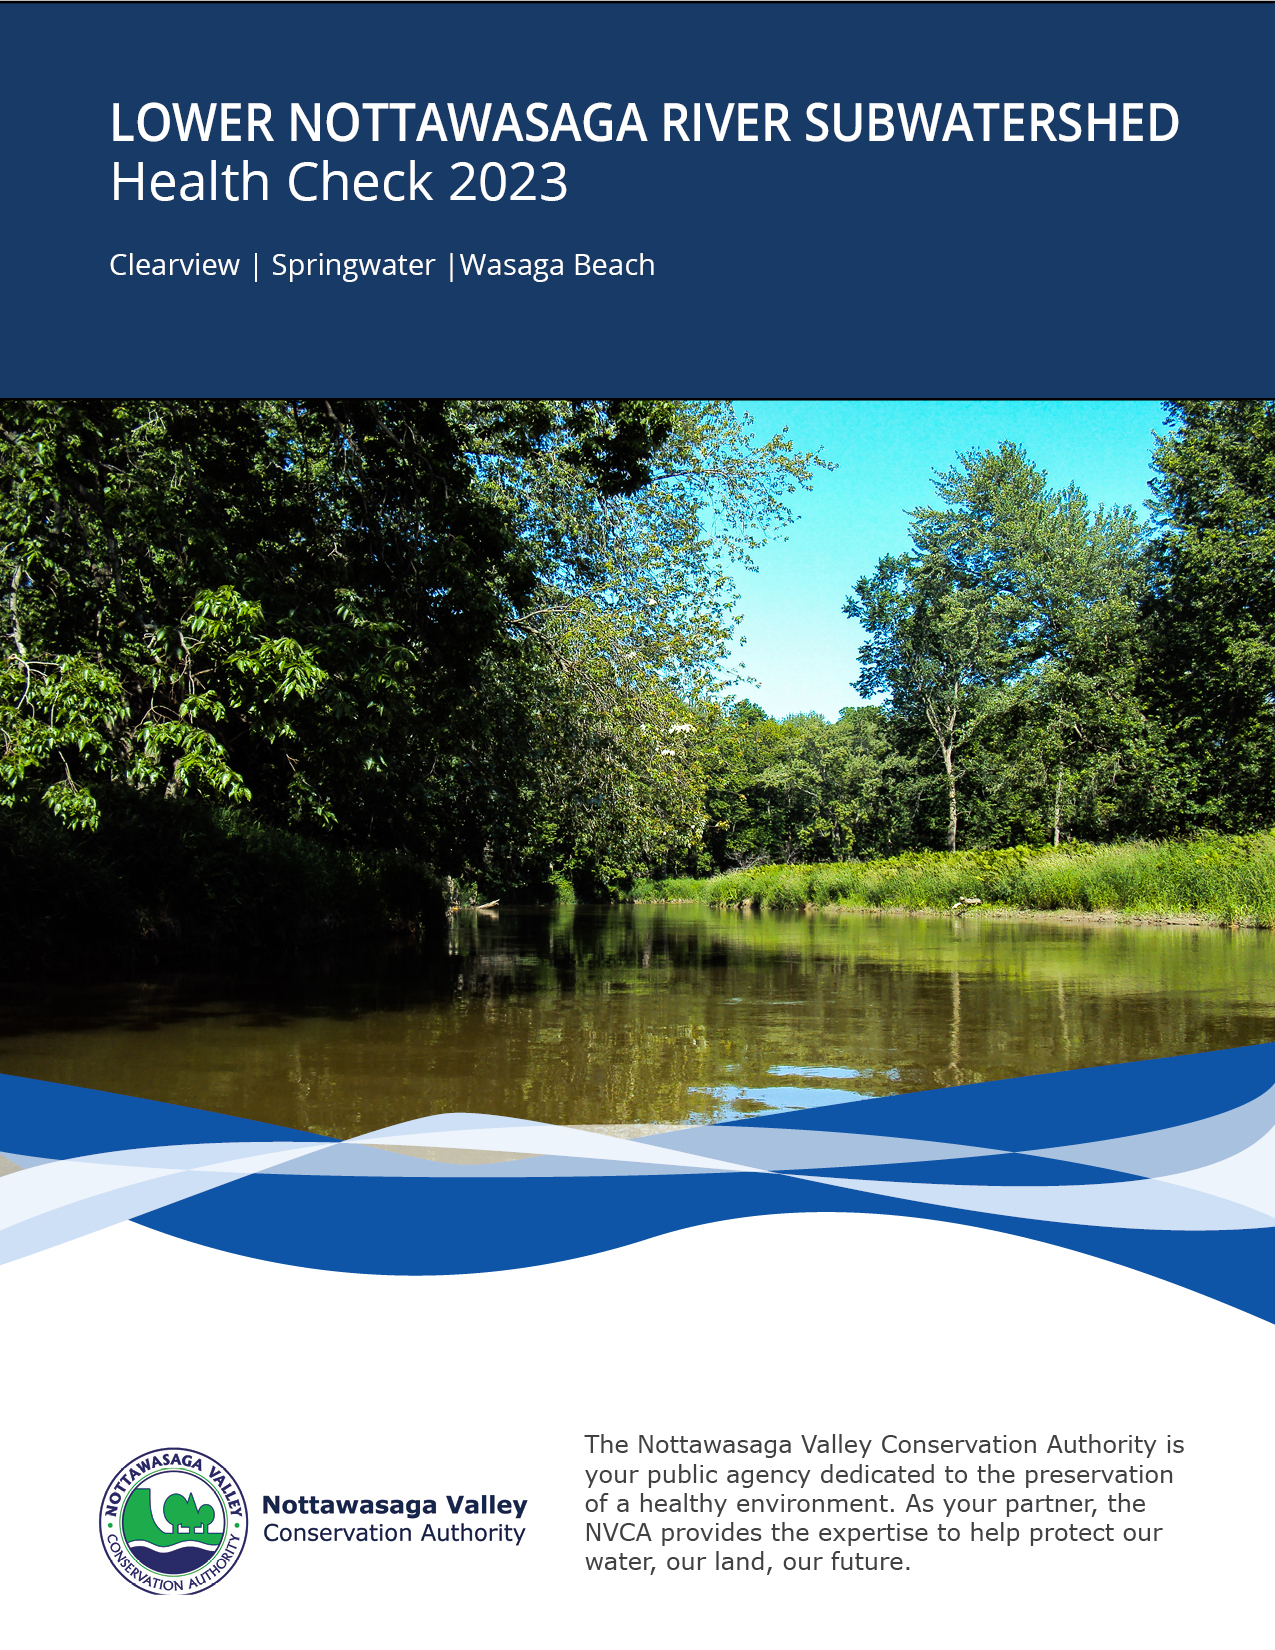 Lower Nottawasaga River Subwatershed Health Check